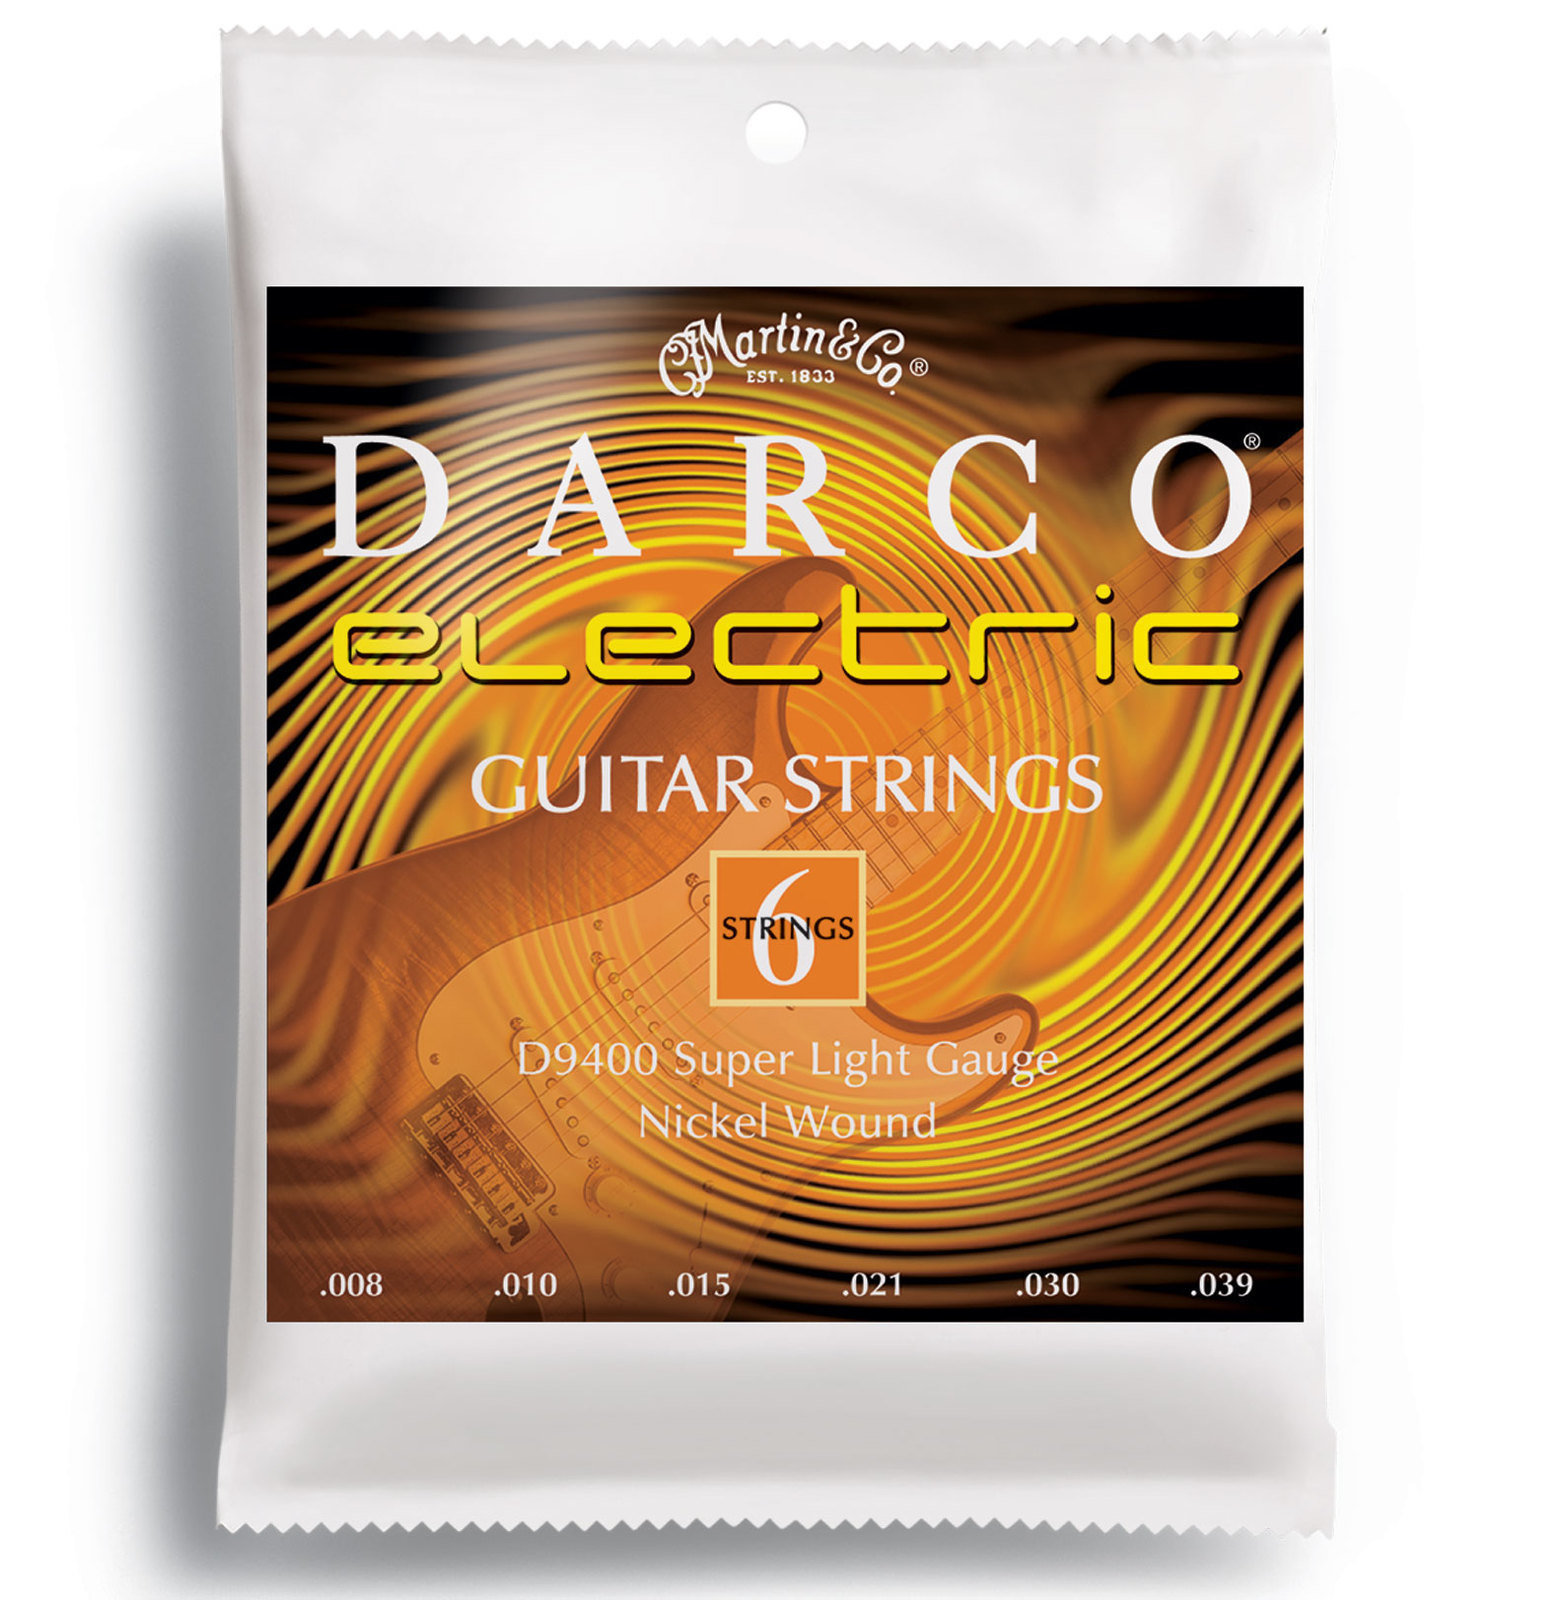 Cordes pour guitares électriques Martin D9400 Darco Electric Guitar Strings, Super Light